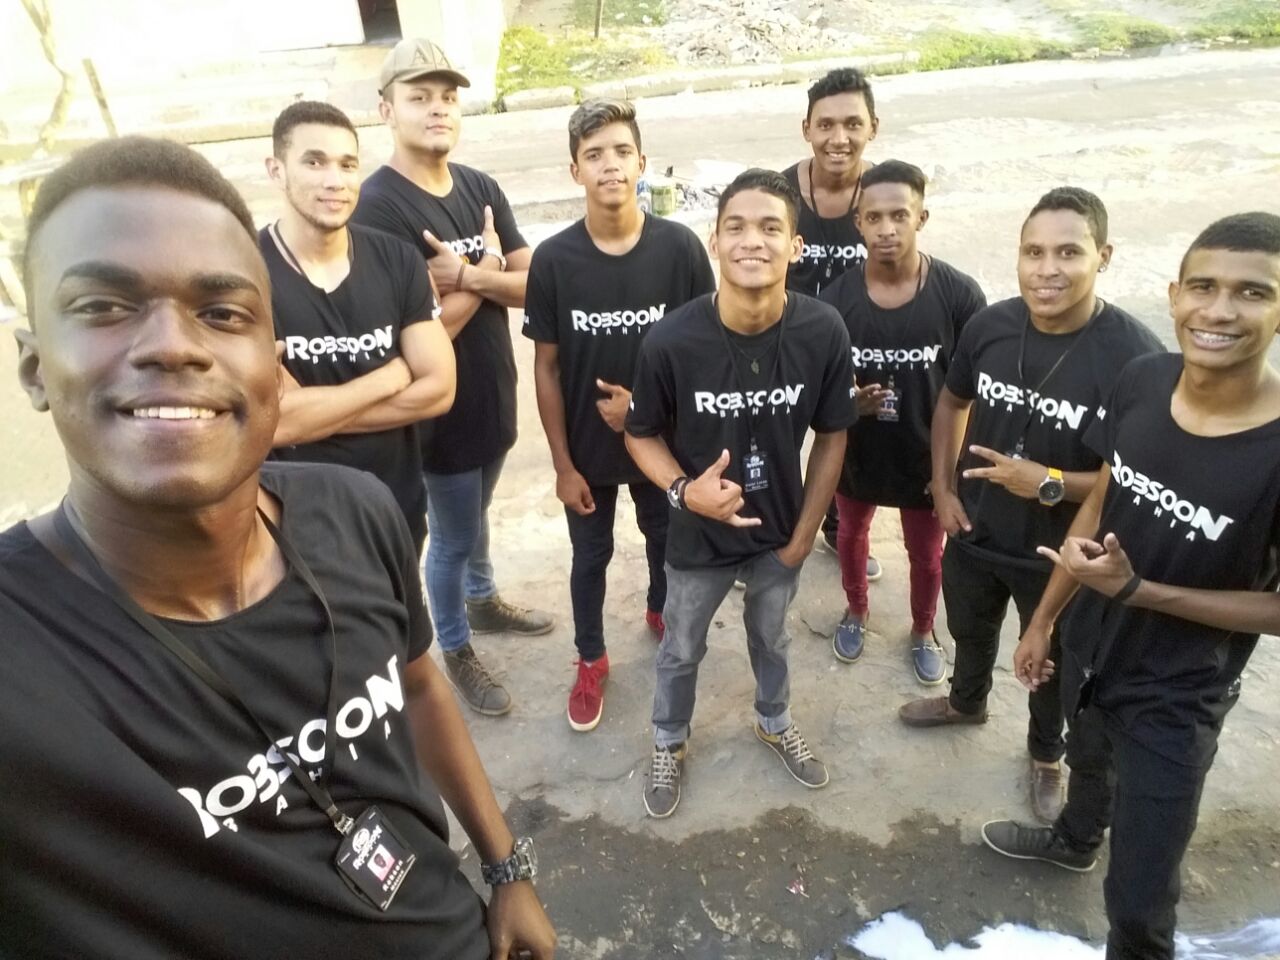 Jovens se preparam para o lançamento do novo projeto do vocalista “Robsoon Bahia”, em Pindaré Mirim